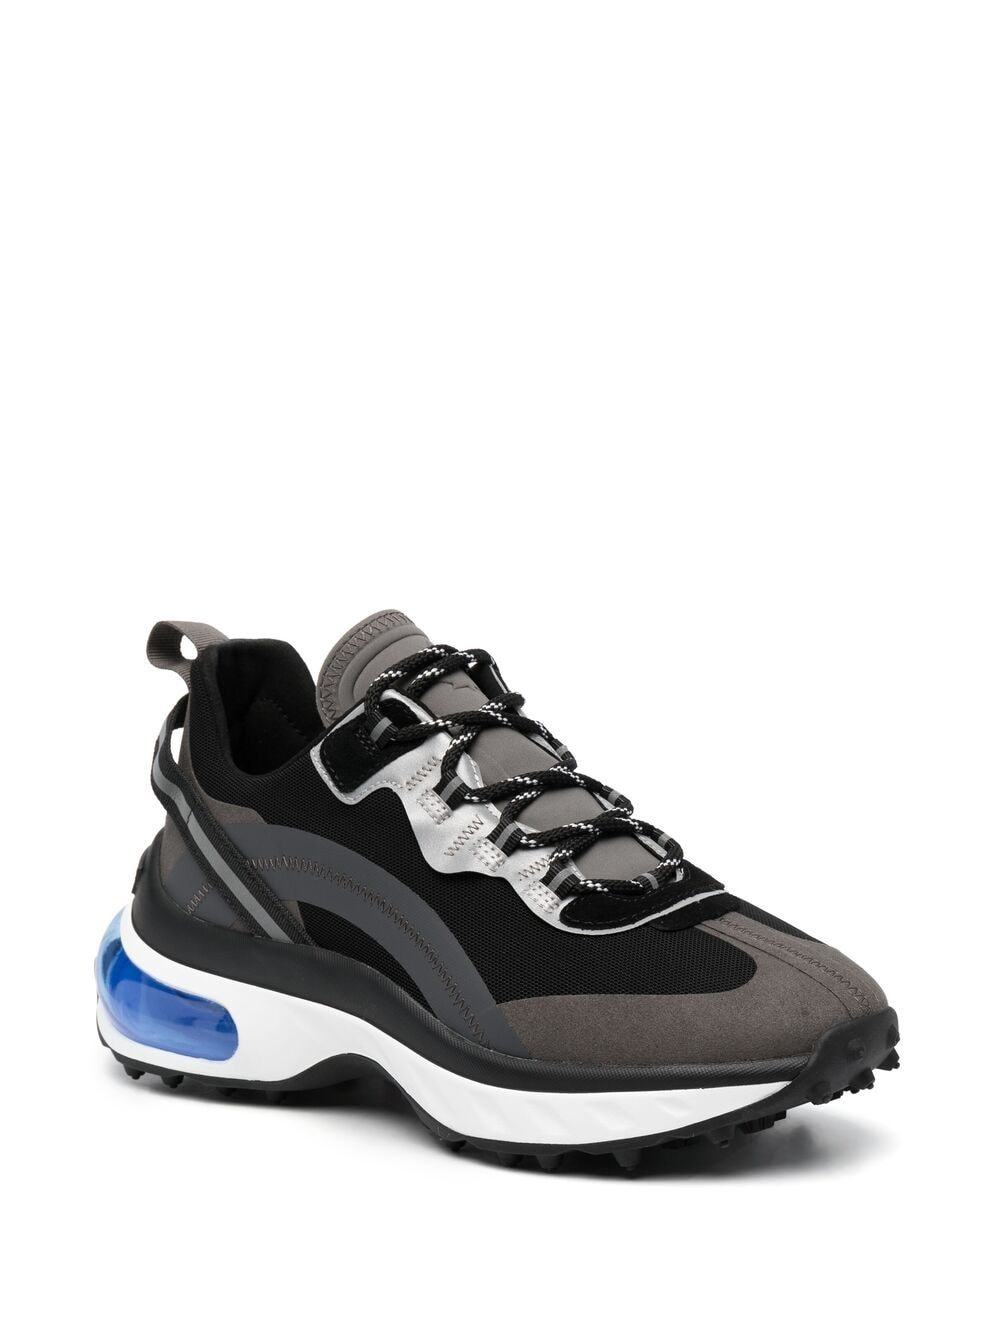 DSQUARED2 Active Bubble Sneakers Black - MAISONDEFASHION.COM